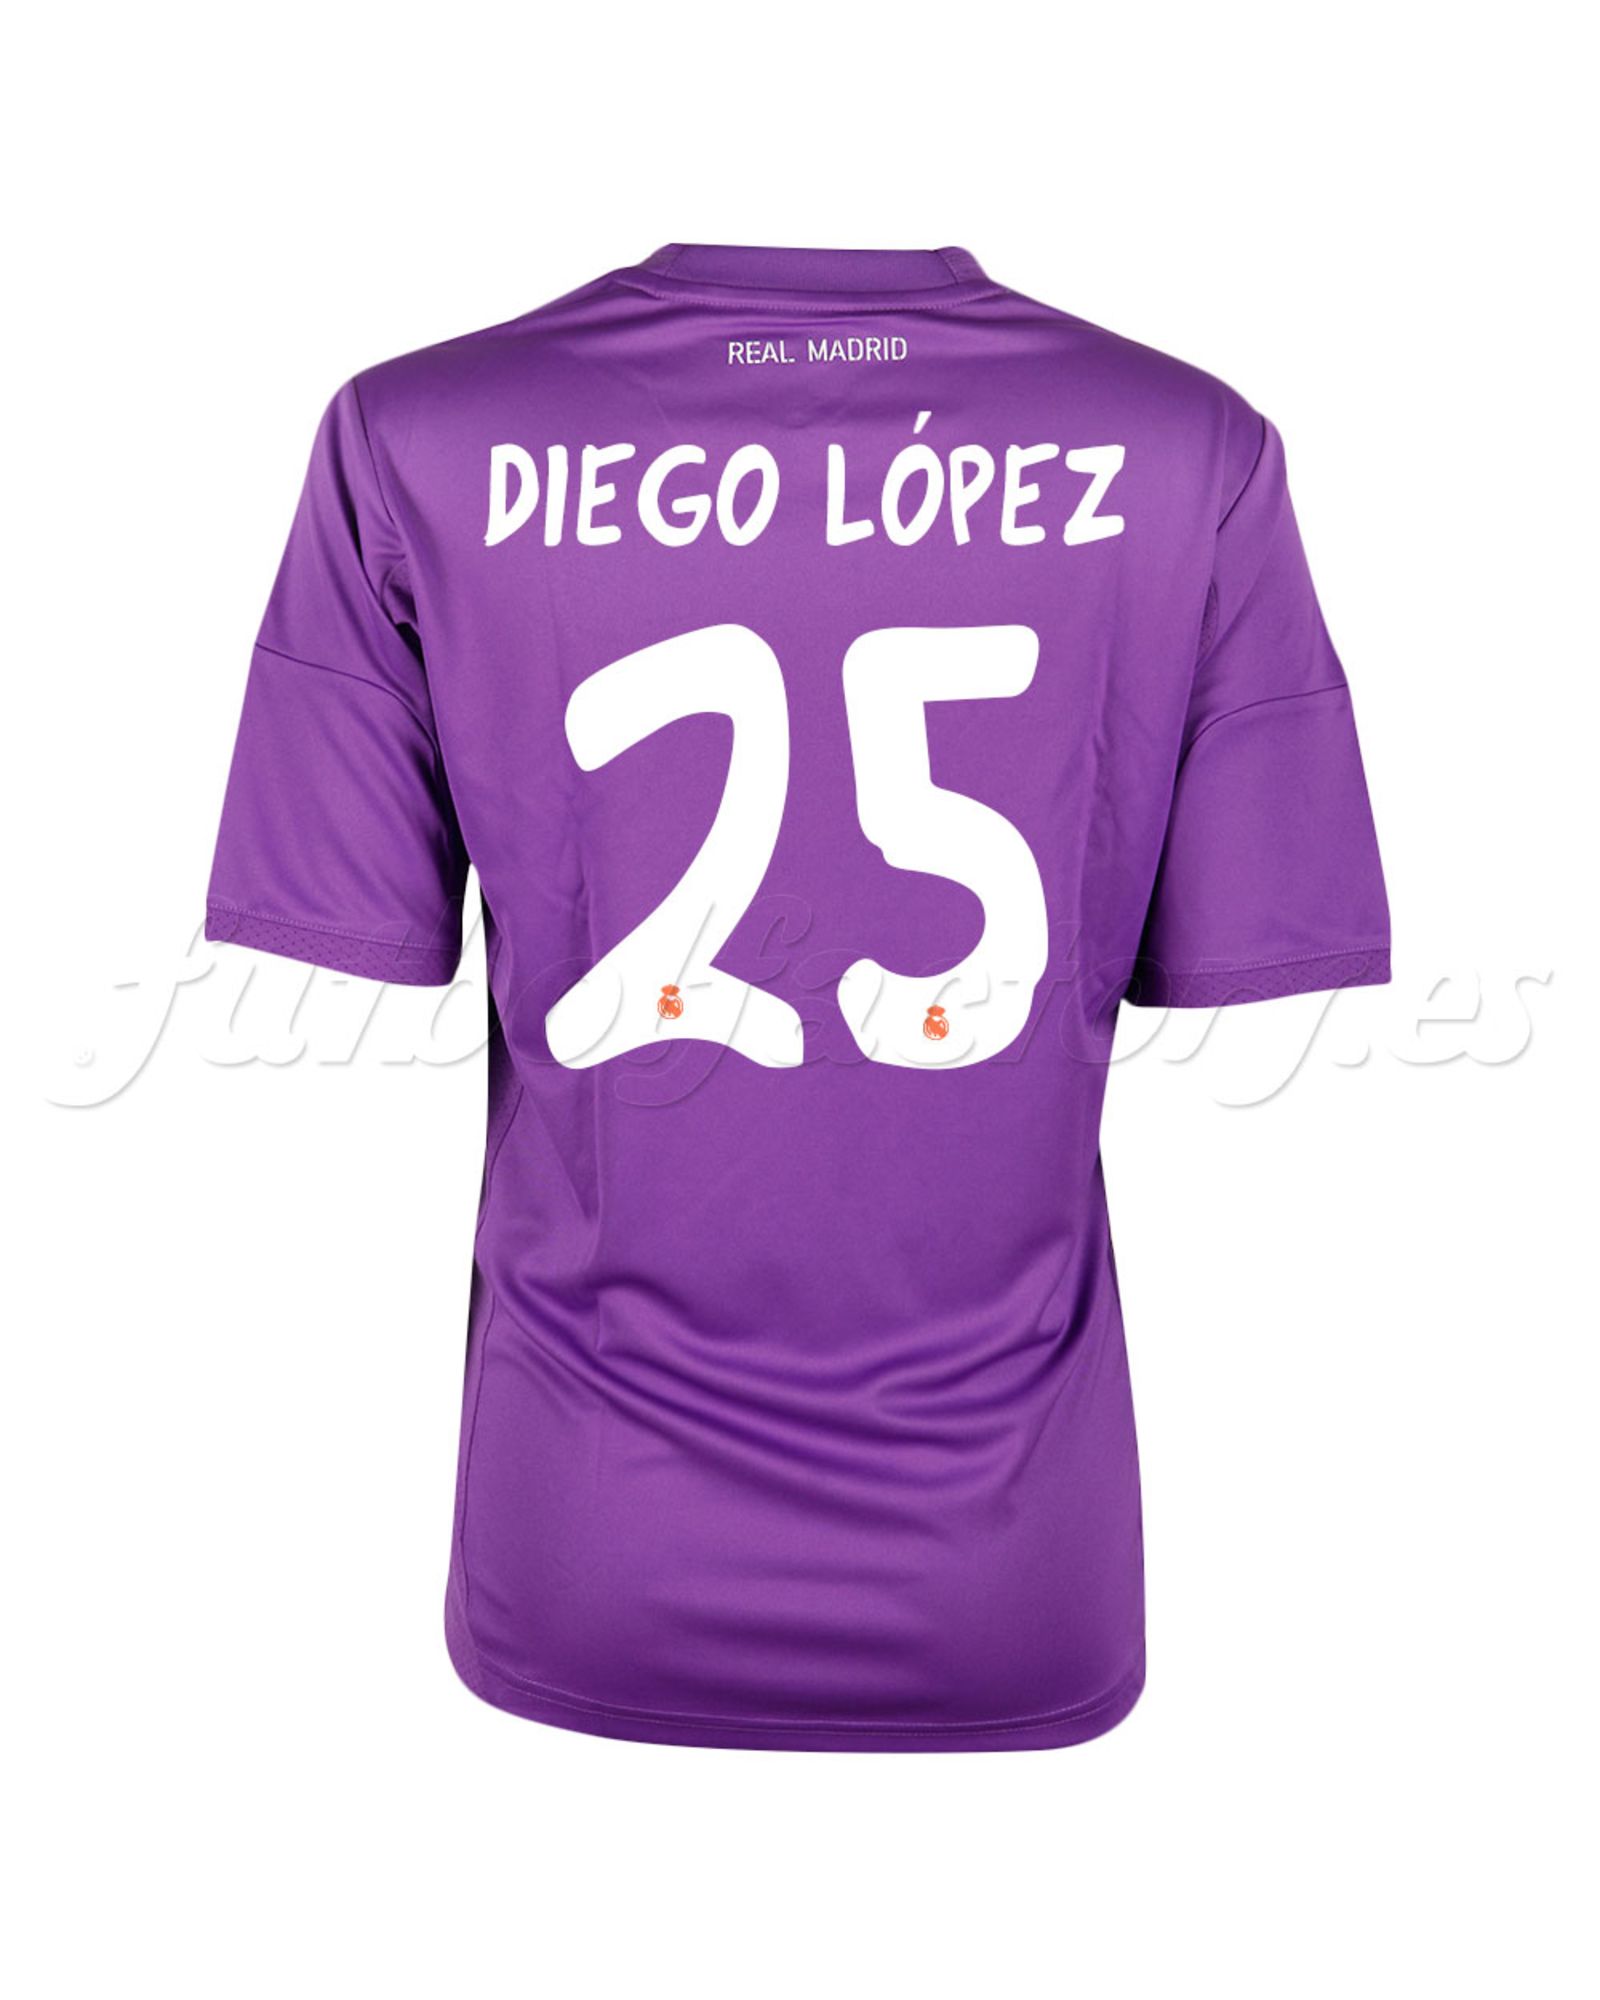 Camiseta Real Madrid Diego López 2013/2014 Morado - Fútbol Factory